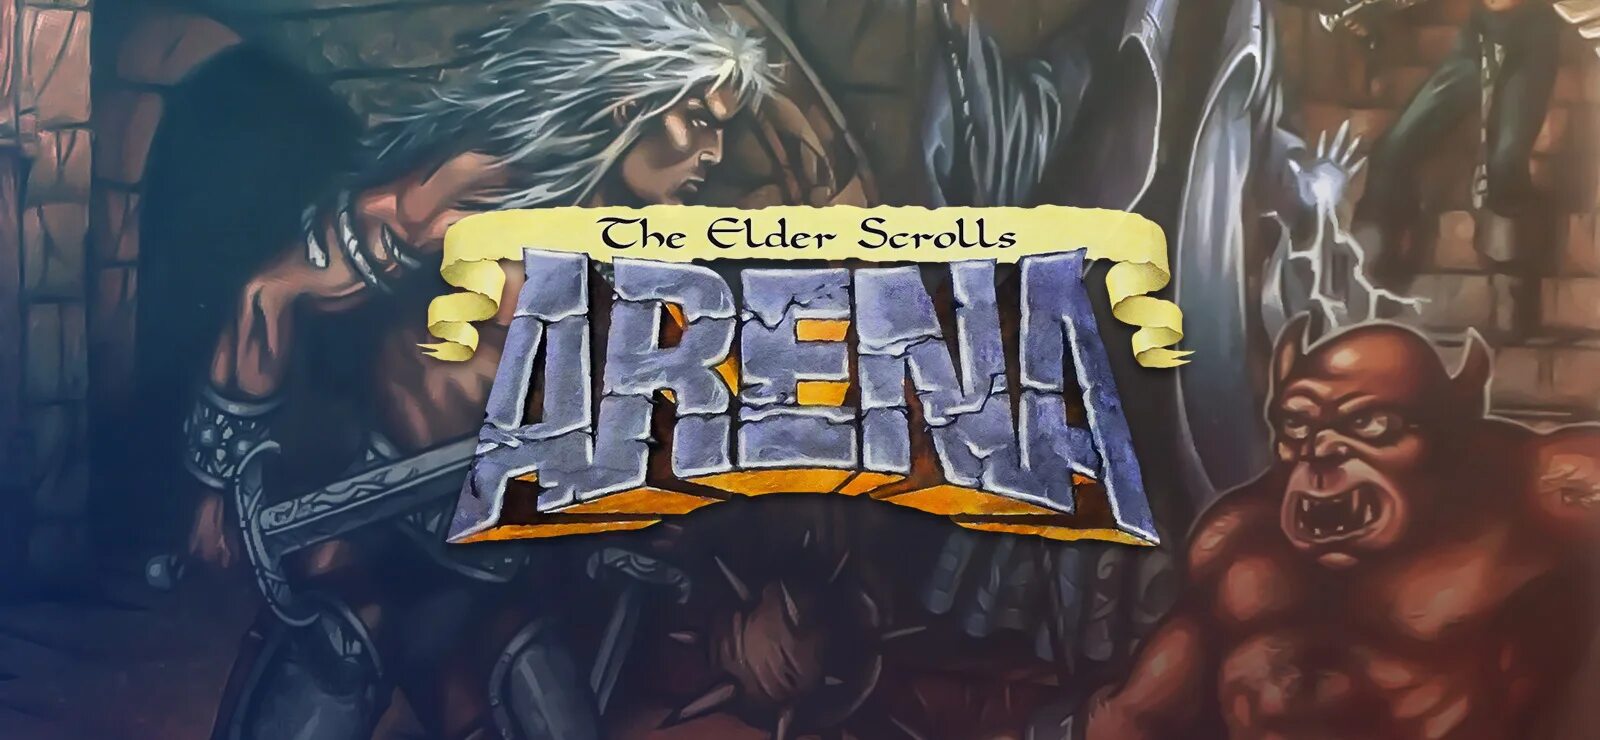 Арена том 1. The Elder Scrolls Arena обложка. The Elder Scrolls: arena1994. The Elder Scrolls 1 Arena. The Elder Scrolls Arena арты.